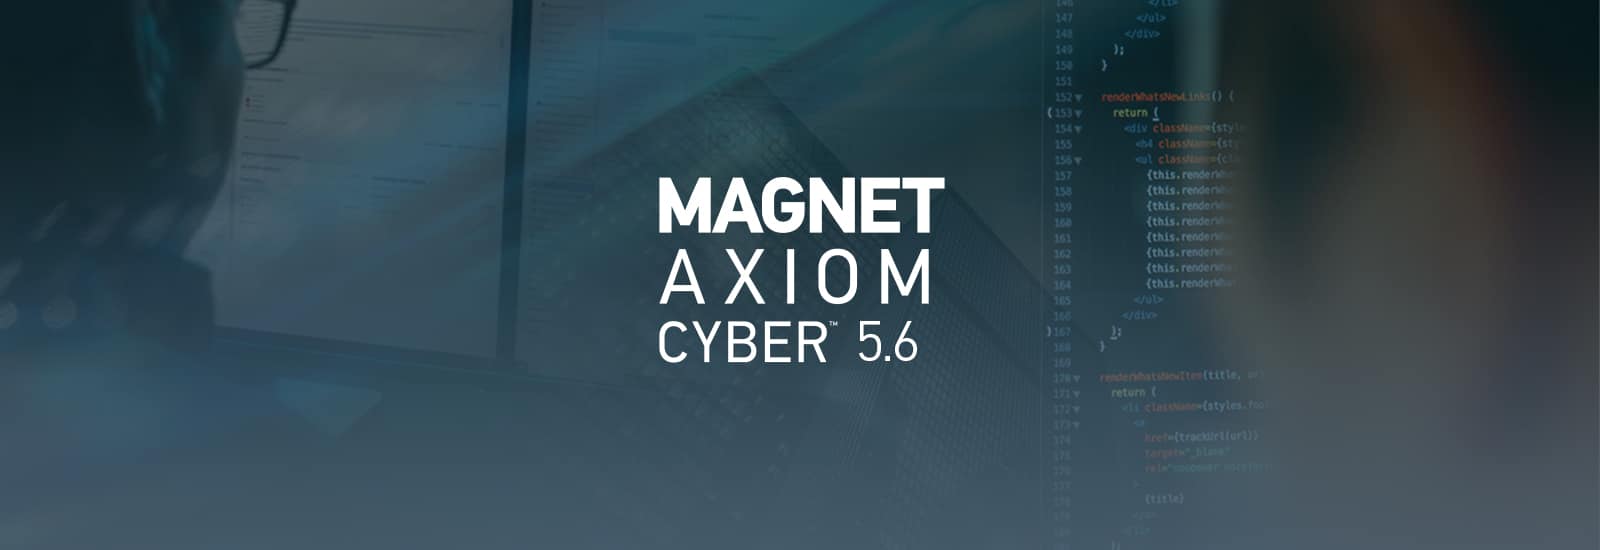 AXIOM Cyber 5.6